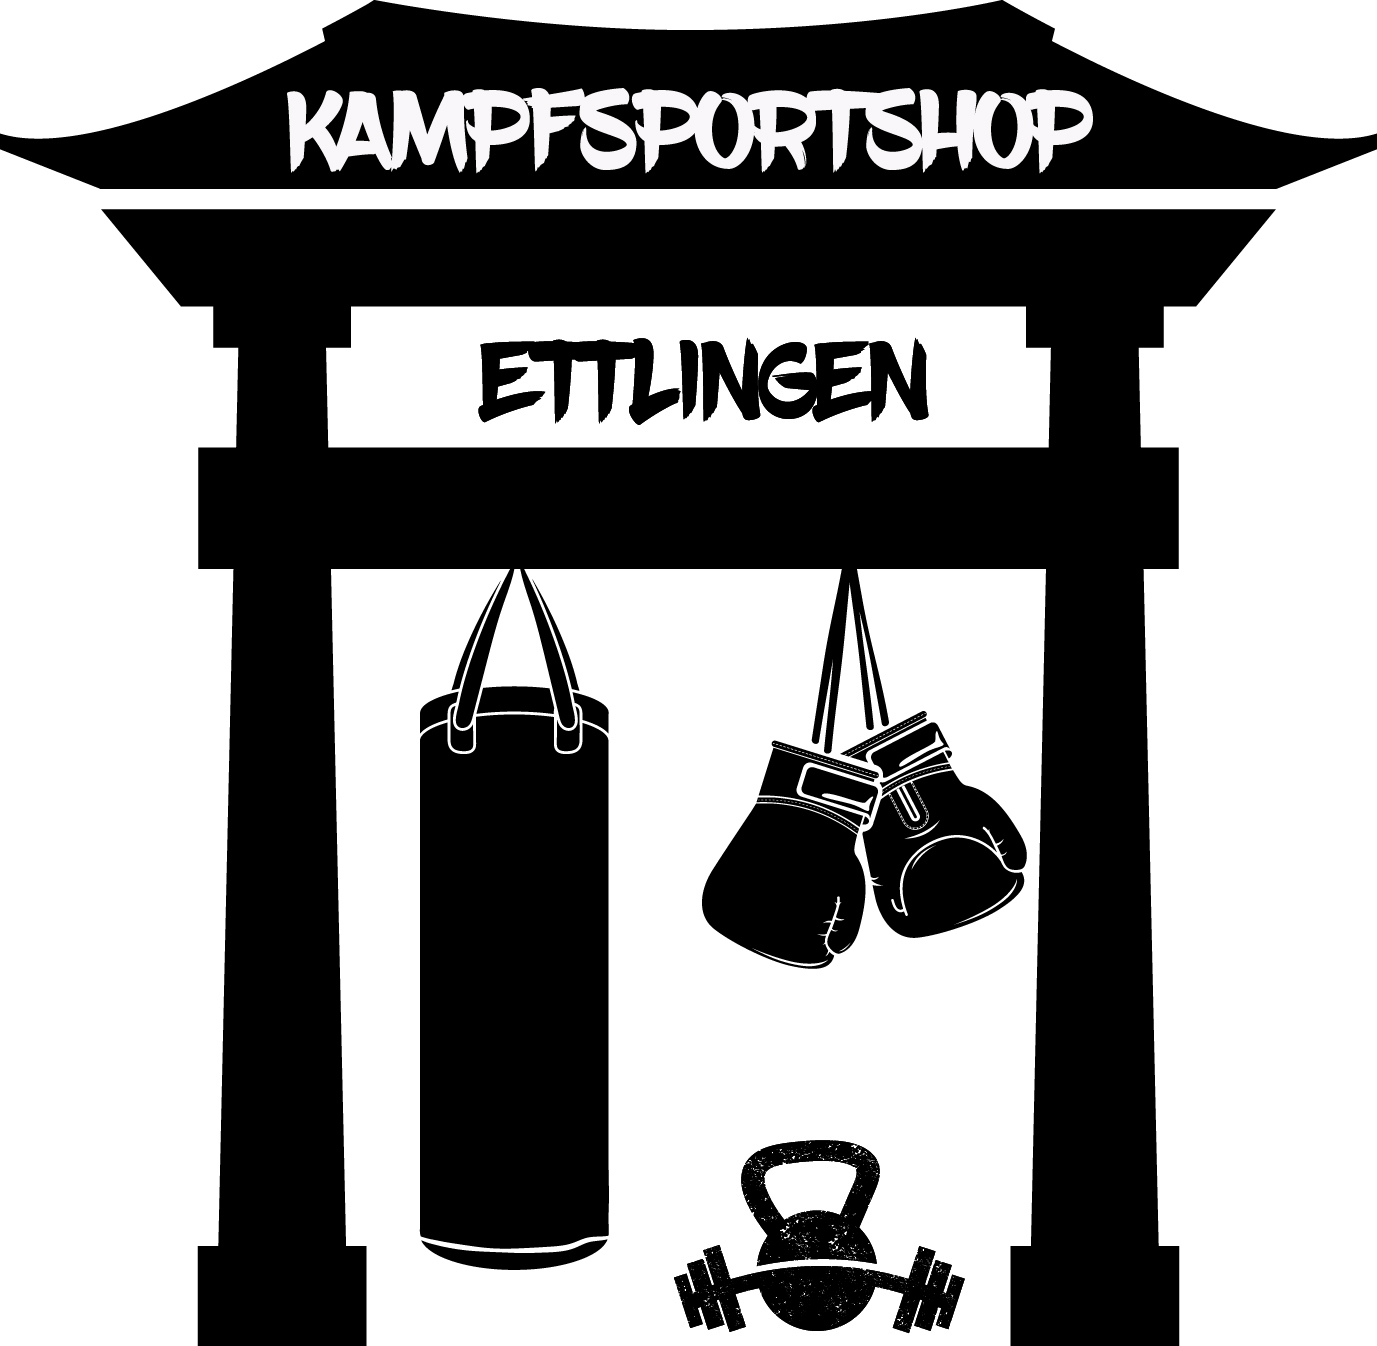 Kampfsport Shop Ettlingen